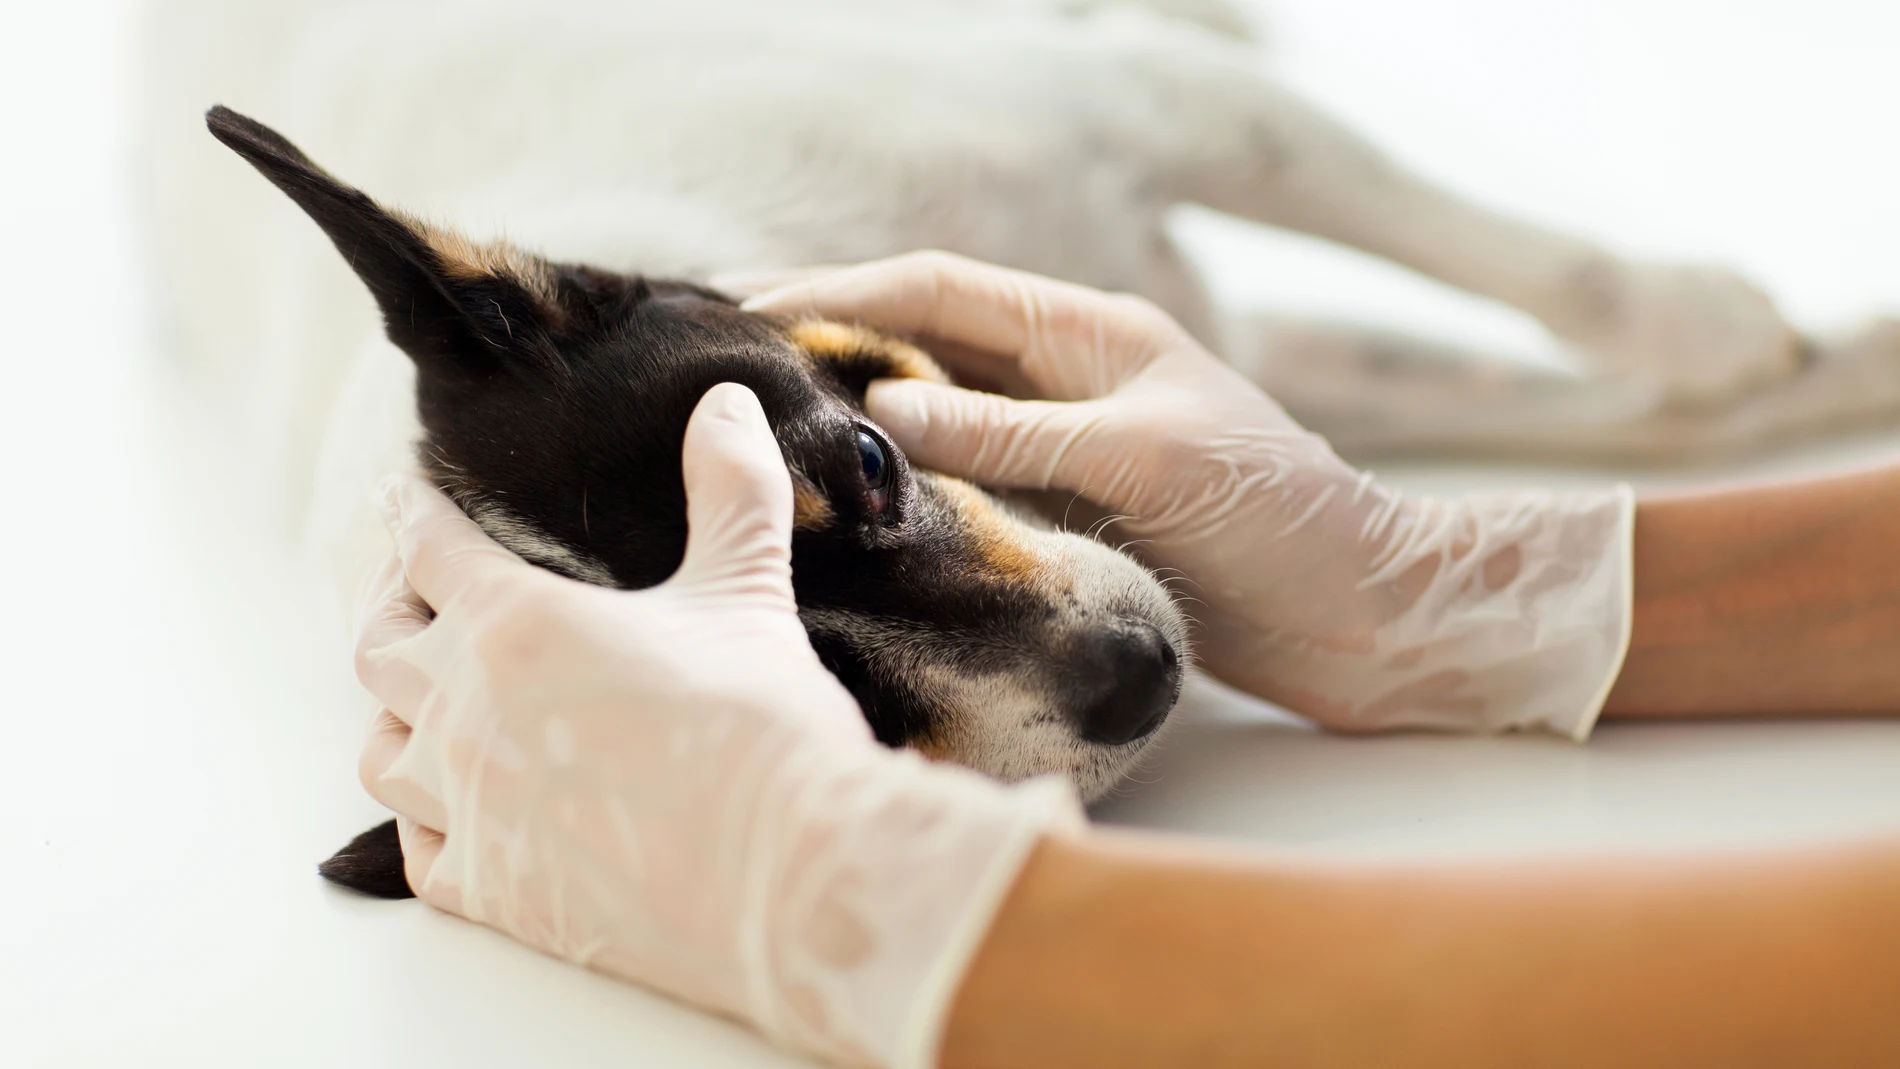 Mascota en una revisión canina realizada por un especialista animal